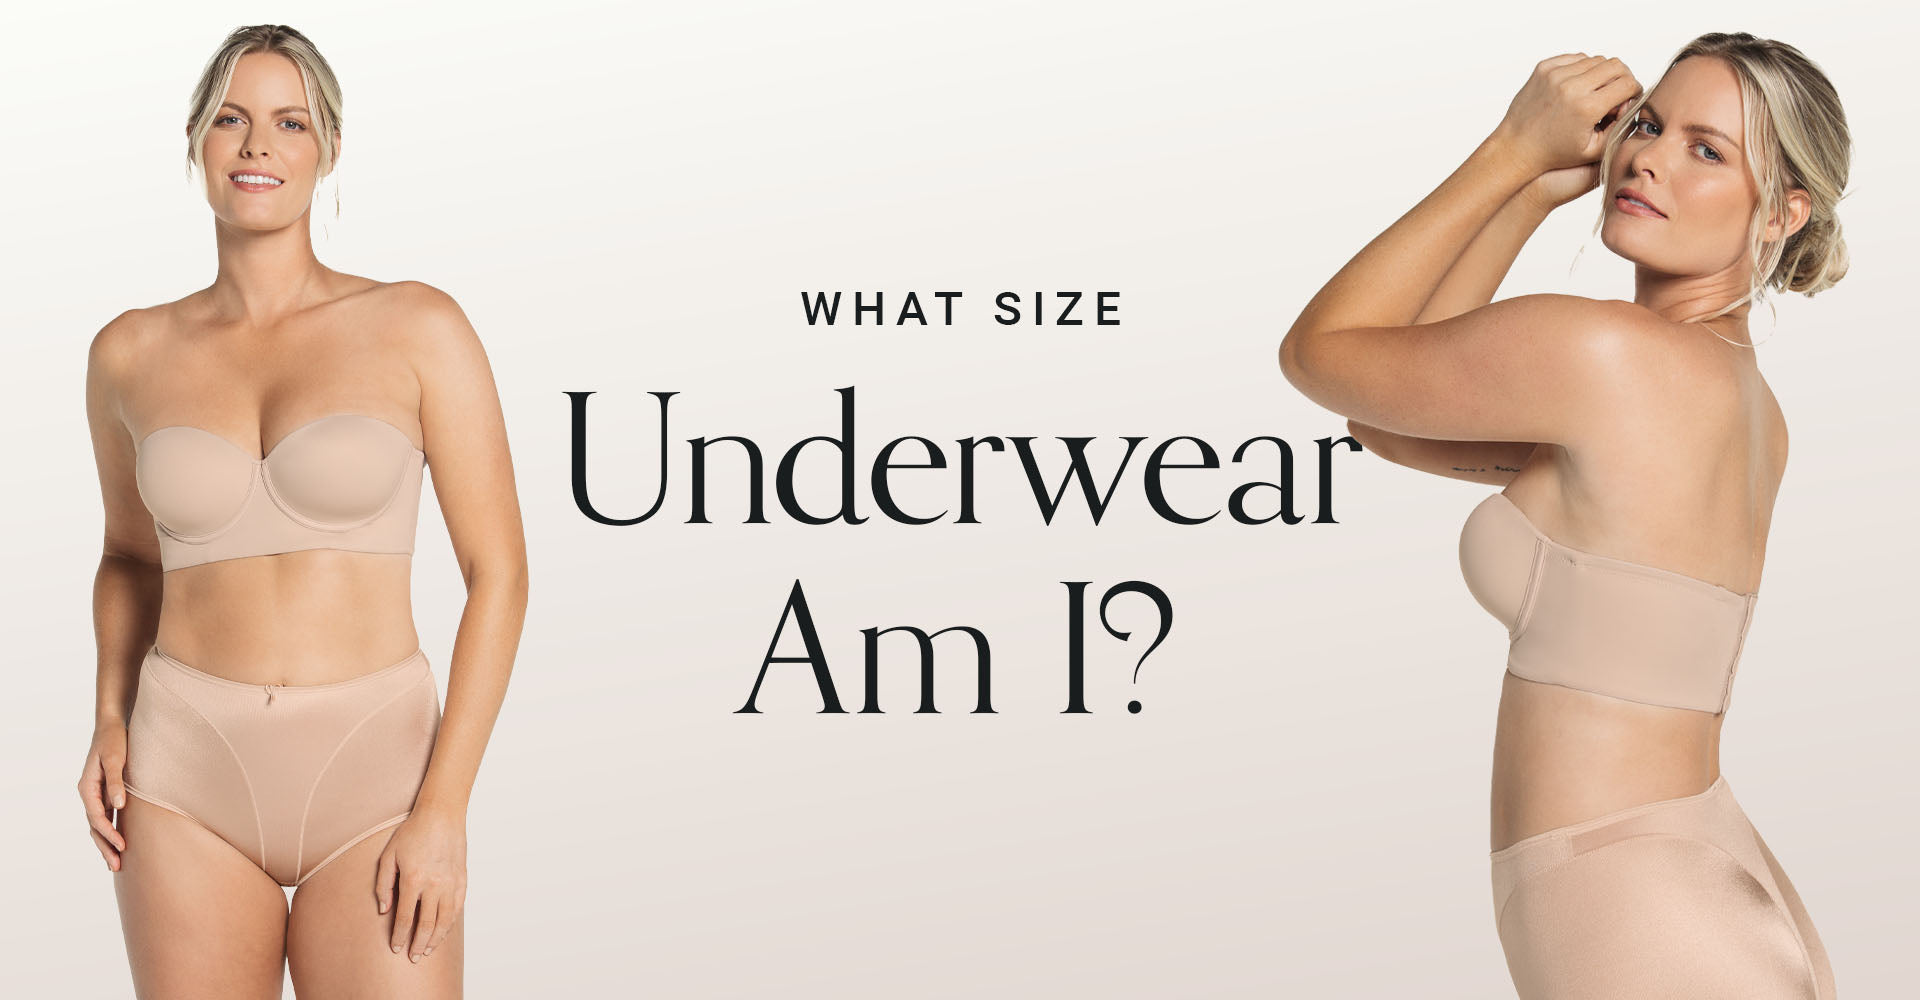 What Size Underwear Am I?